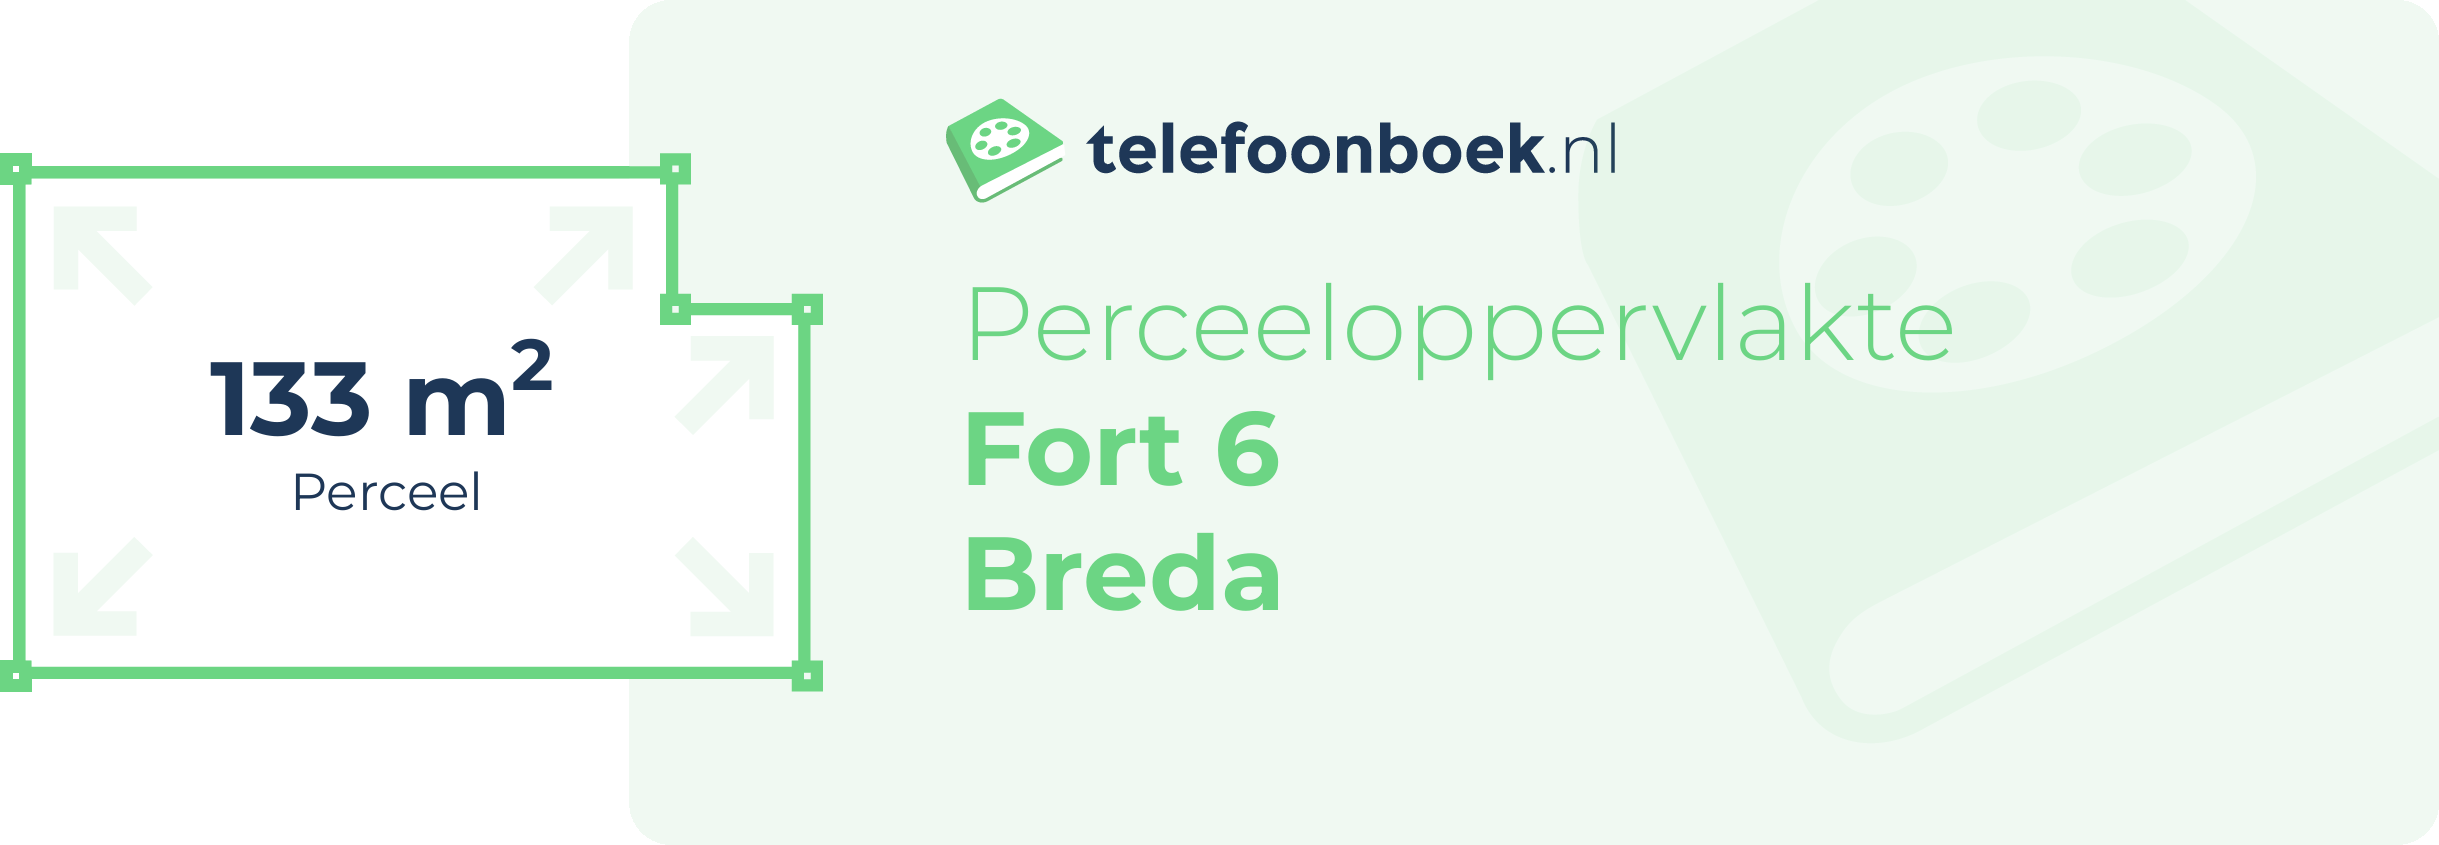 Perceeloppervlakte Fort 6 Breda